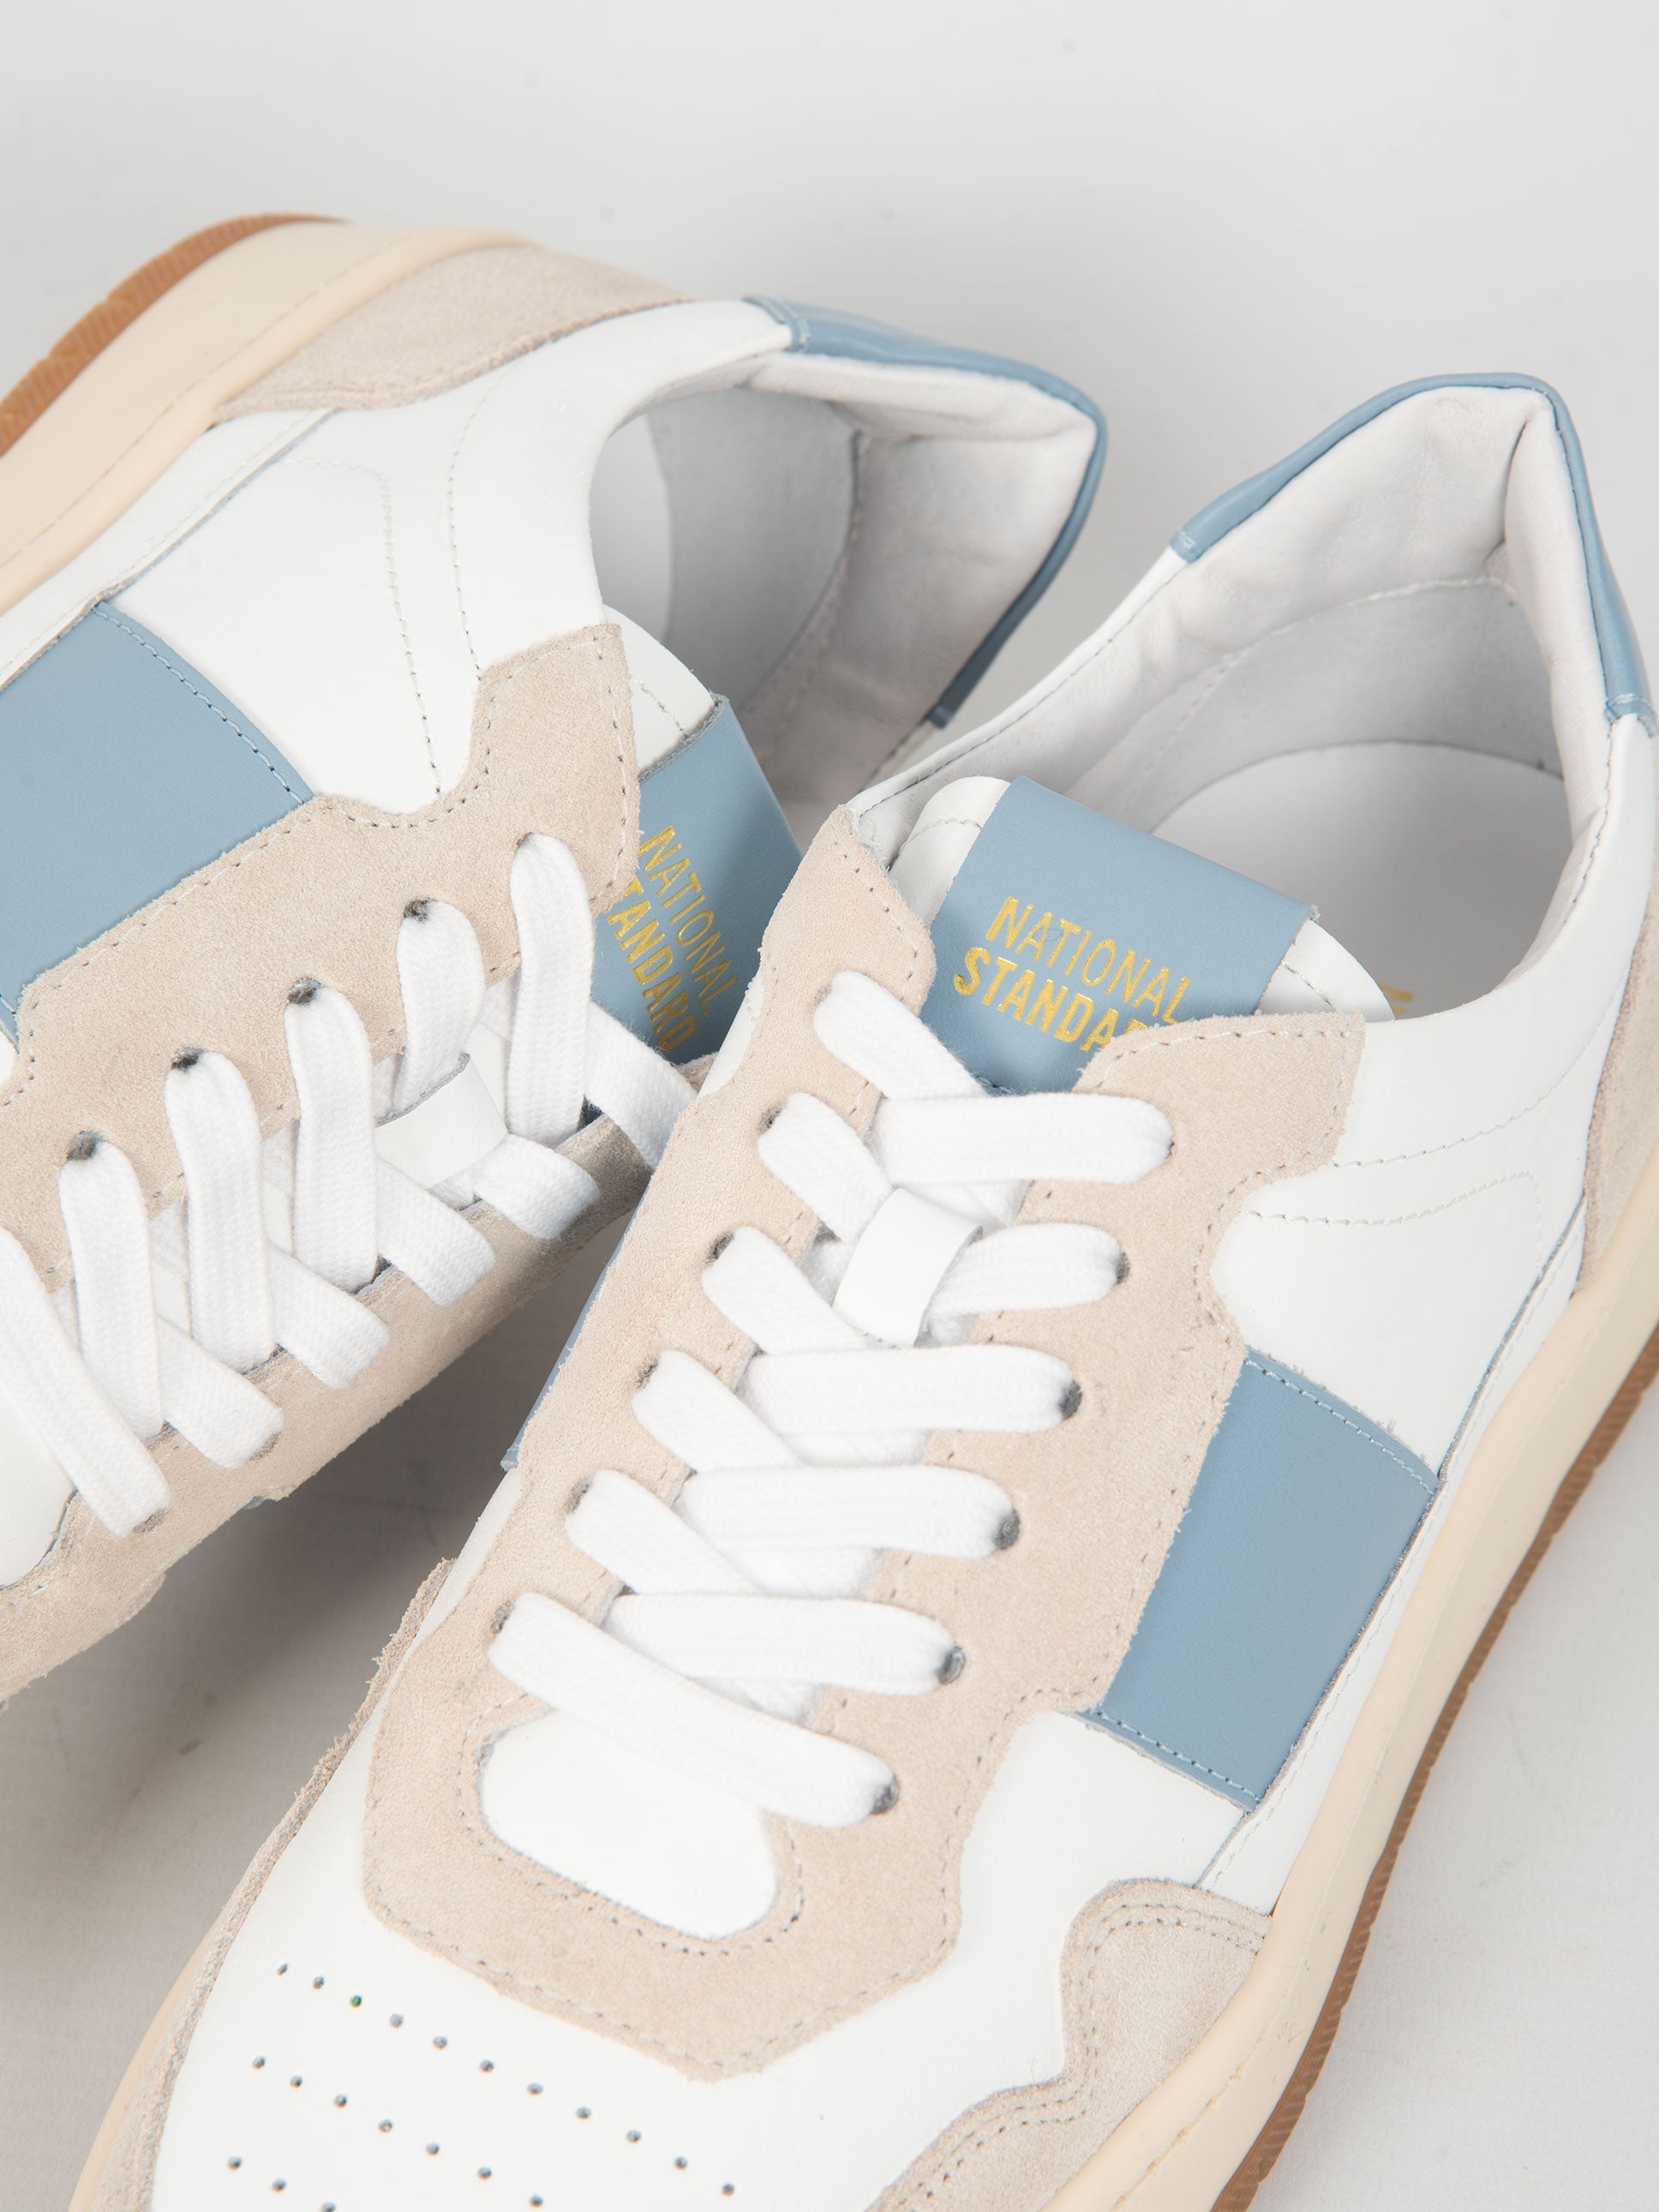 Sneakers '6 Low' - Bianco/Celeste